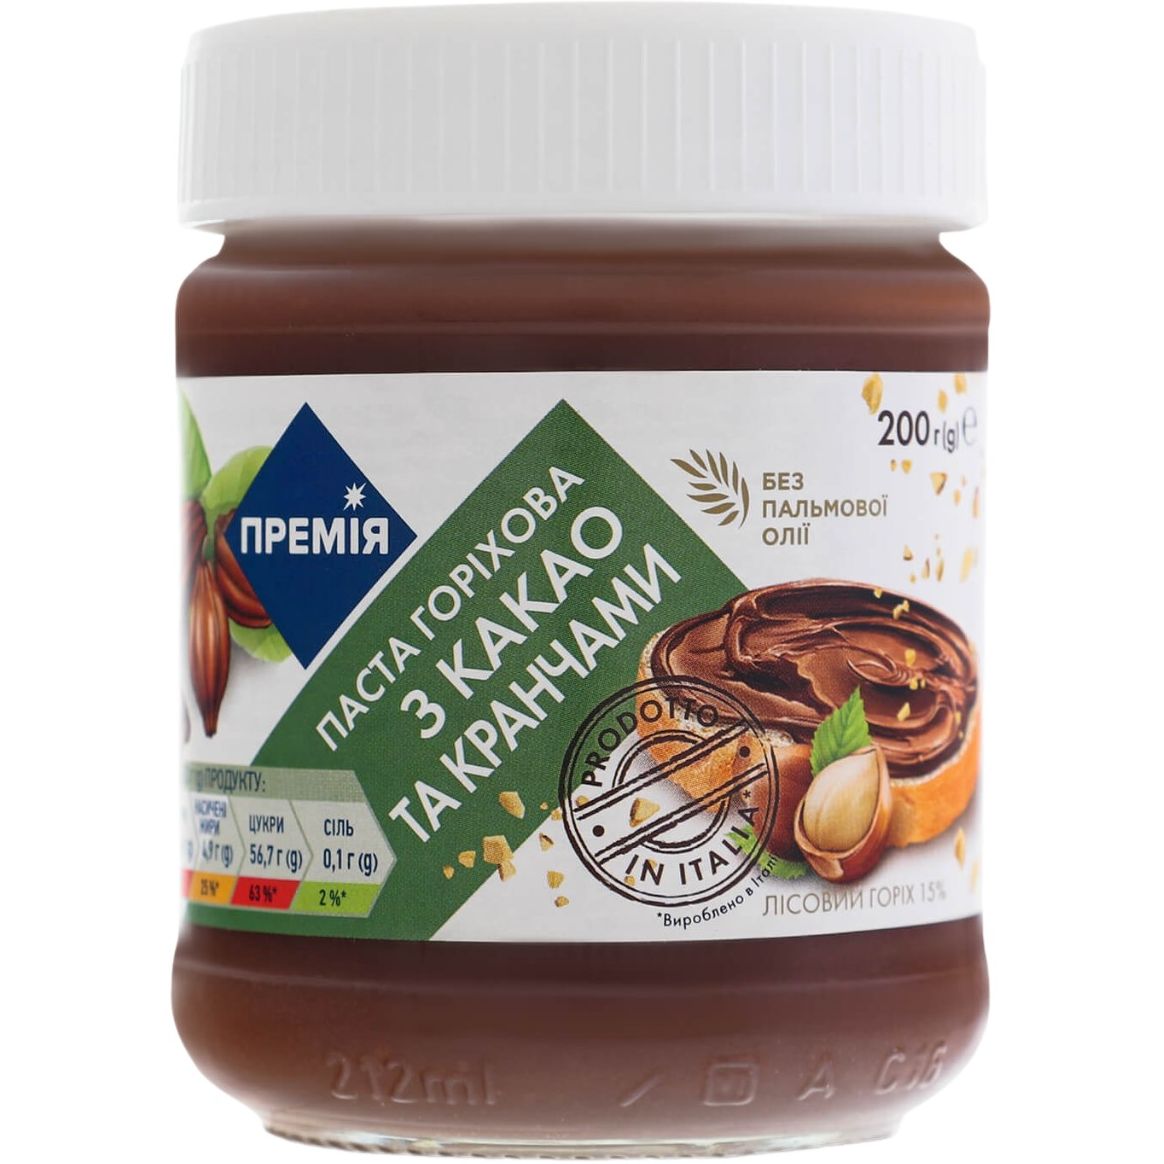 Ореховая паста Премия с какао и кранчами без пальмового масла 200 г - фото 1